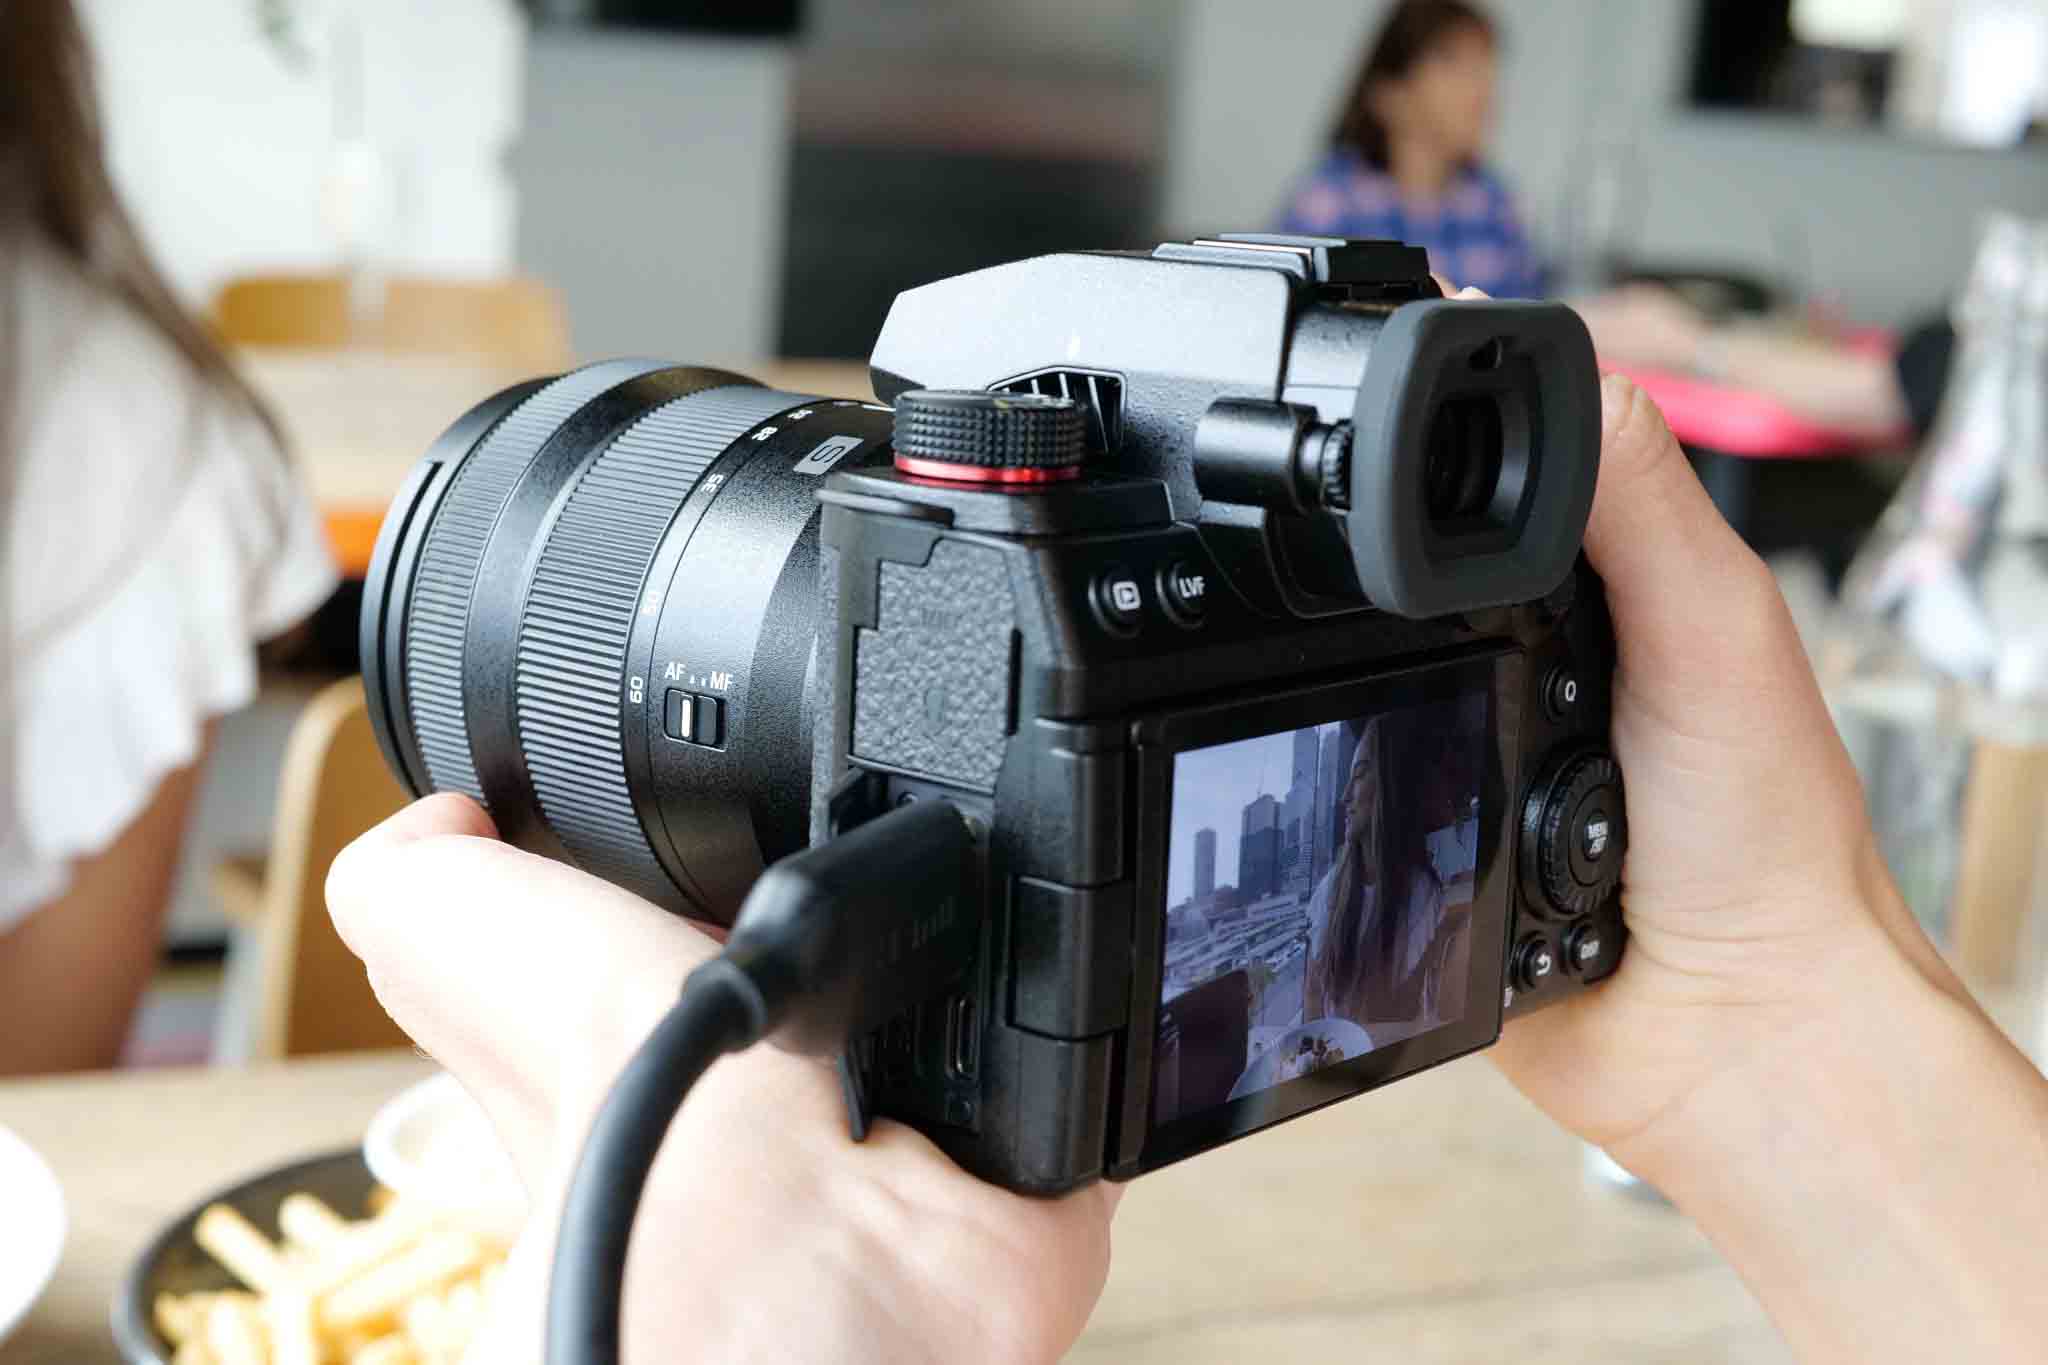 Panasonic Lumix release the long awaited S5 II mirrorless camera